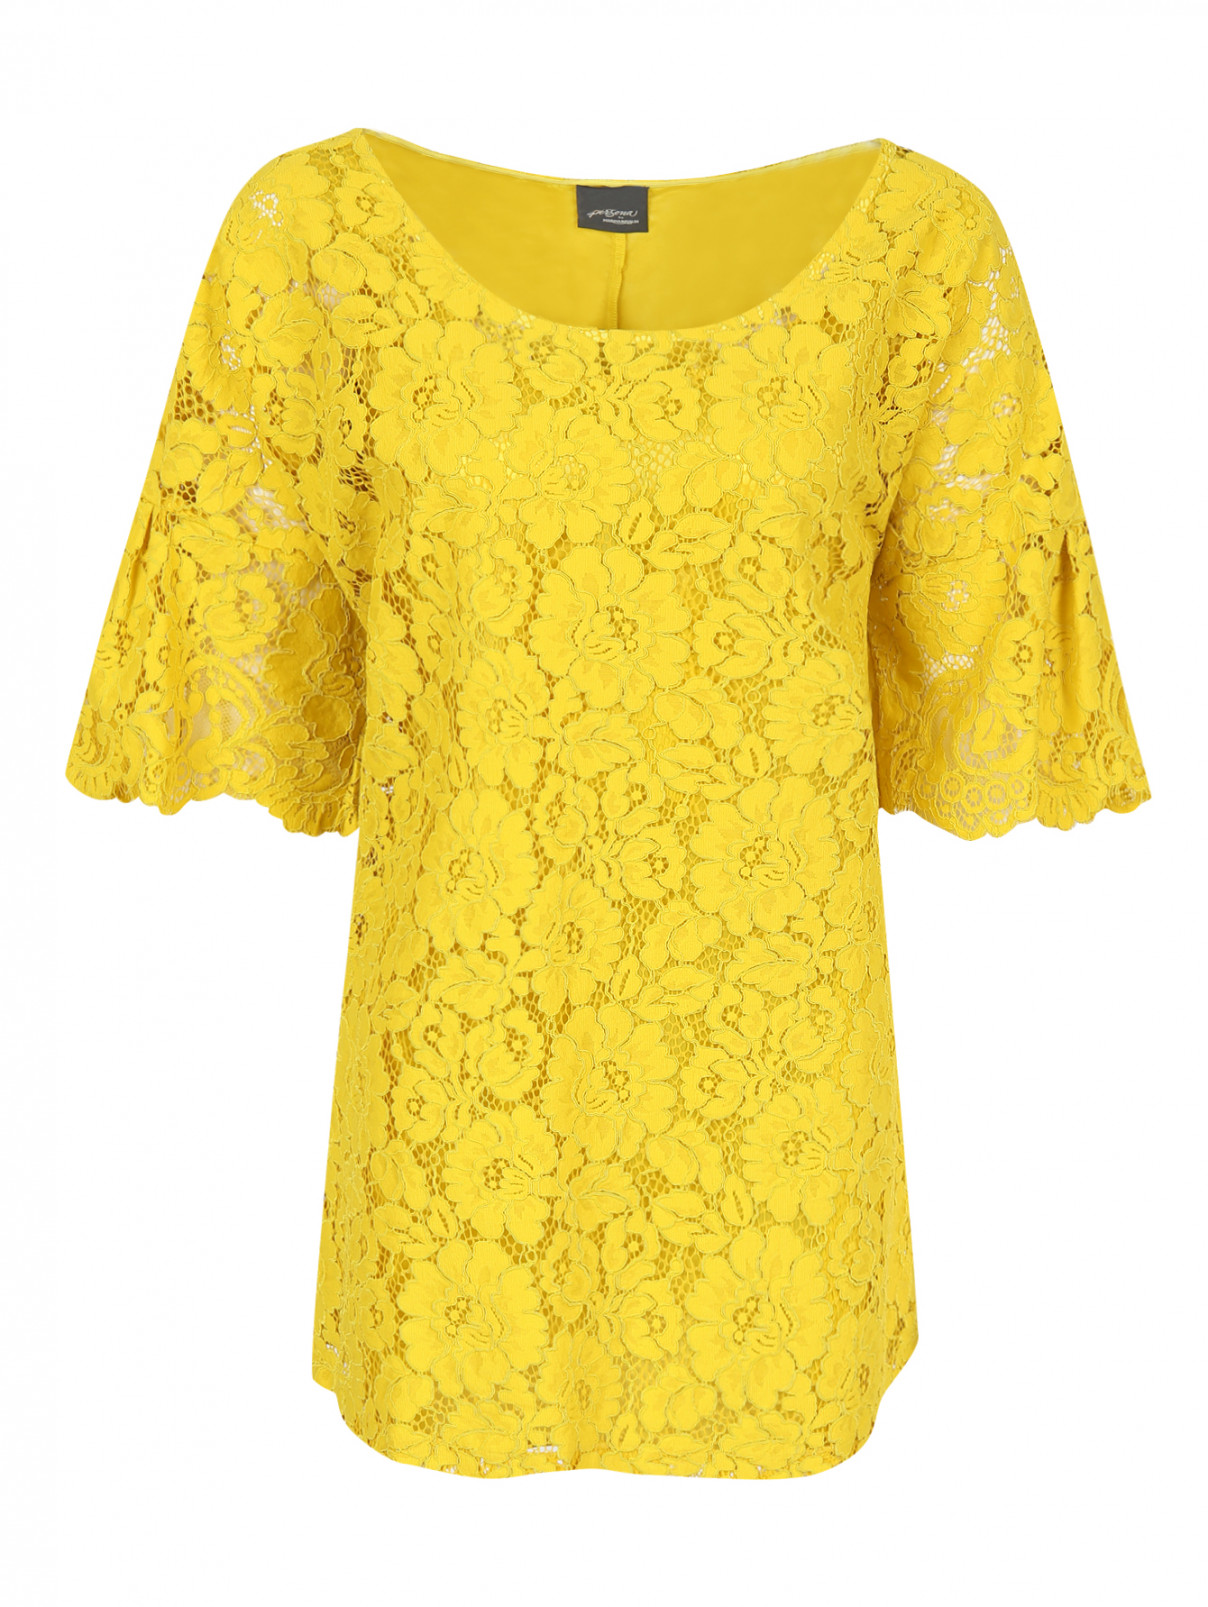 Кружевная блуза свободного кроя с коротким рукавом Persona by Marina Rinaldi  –  Общий вид  – Цвет:  Желтый